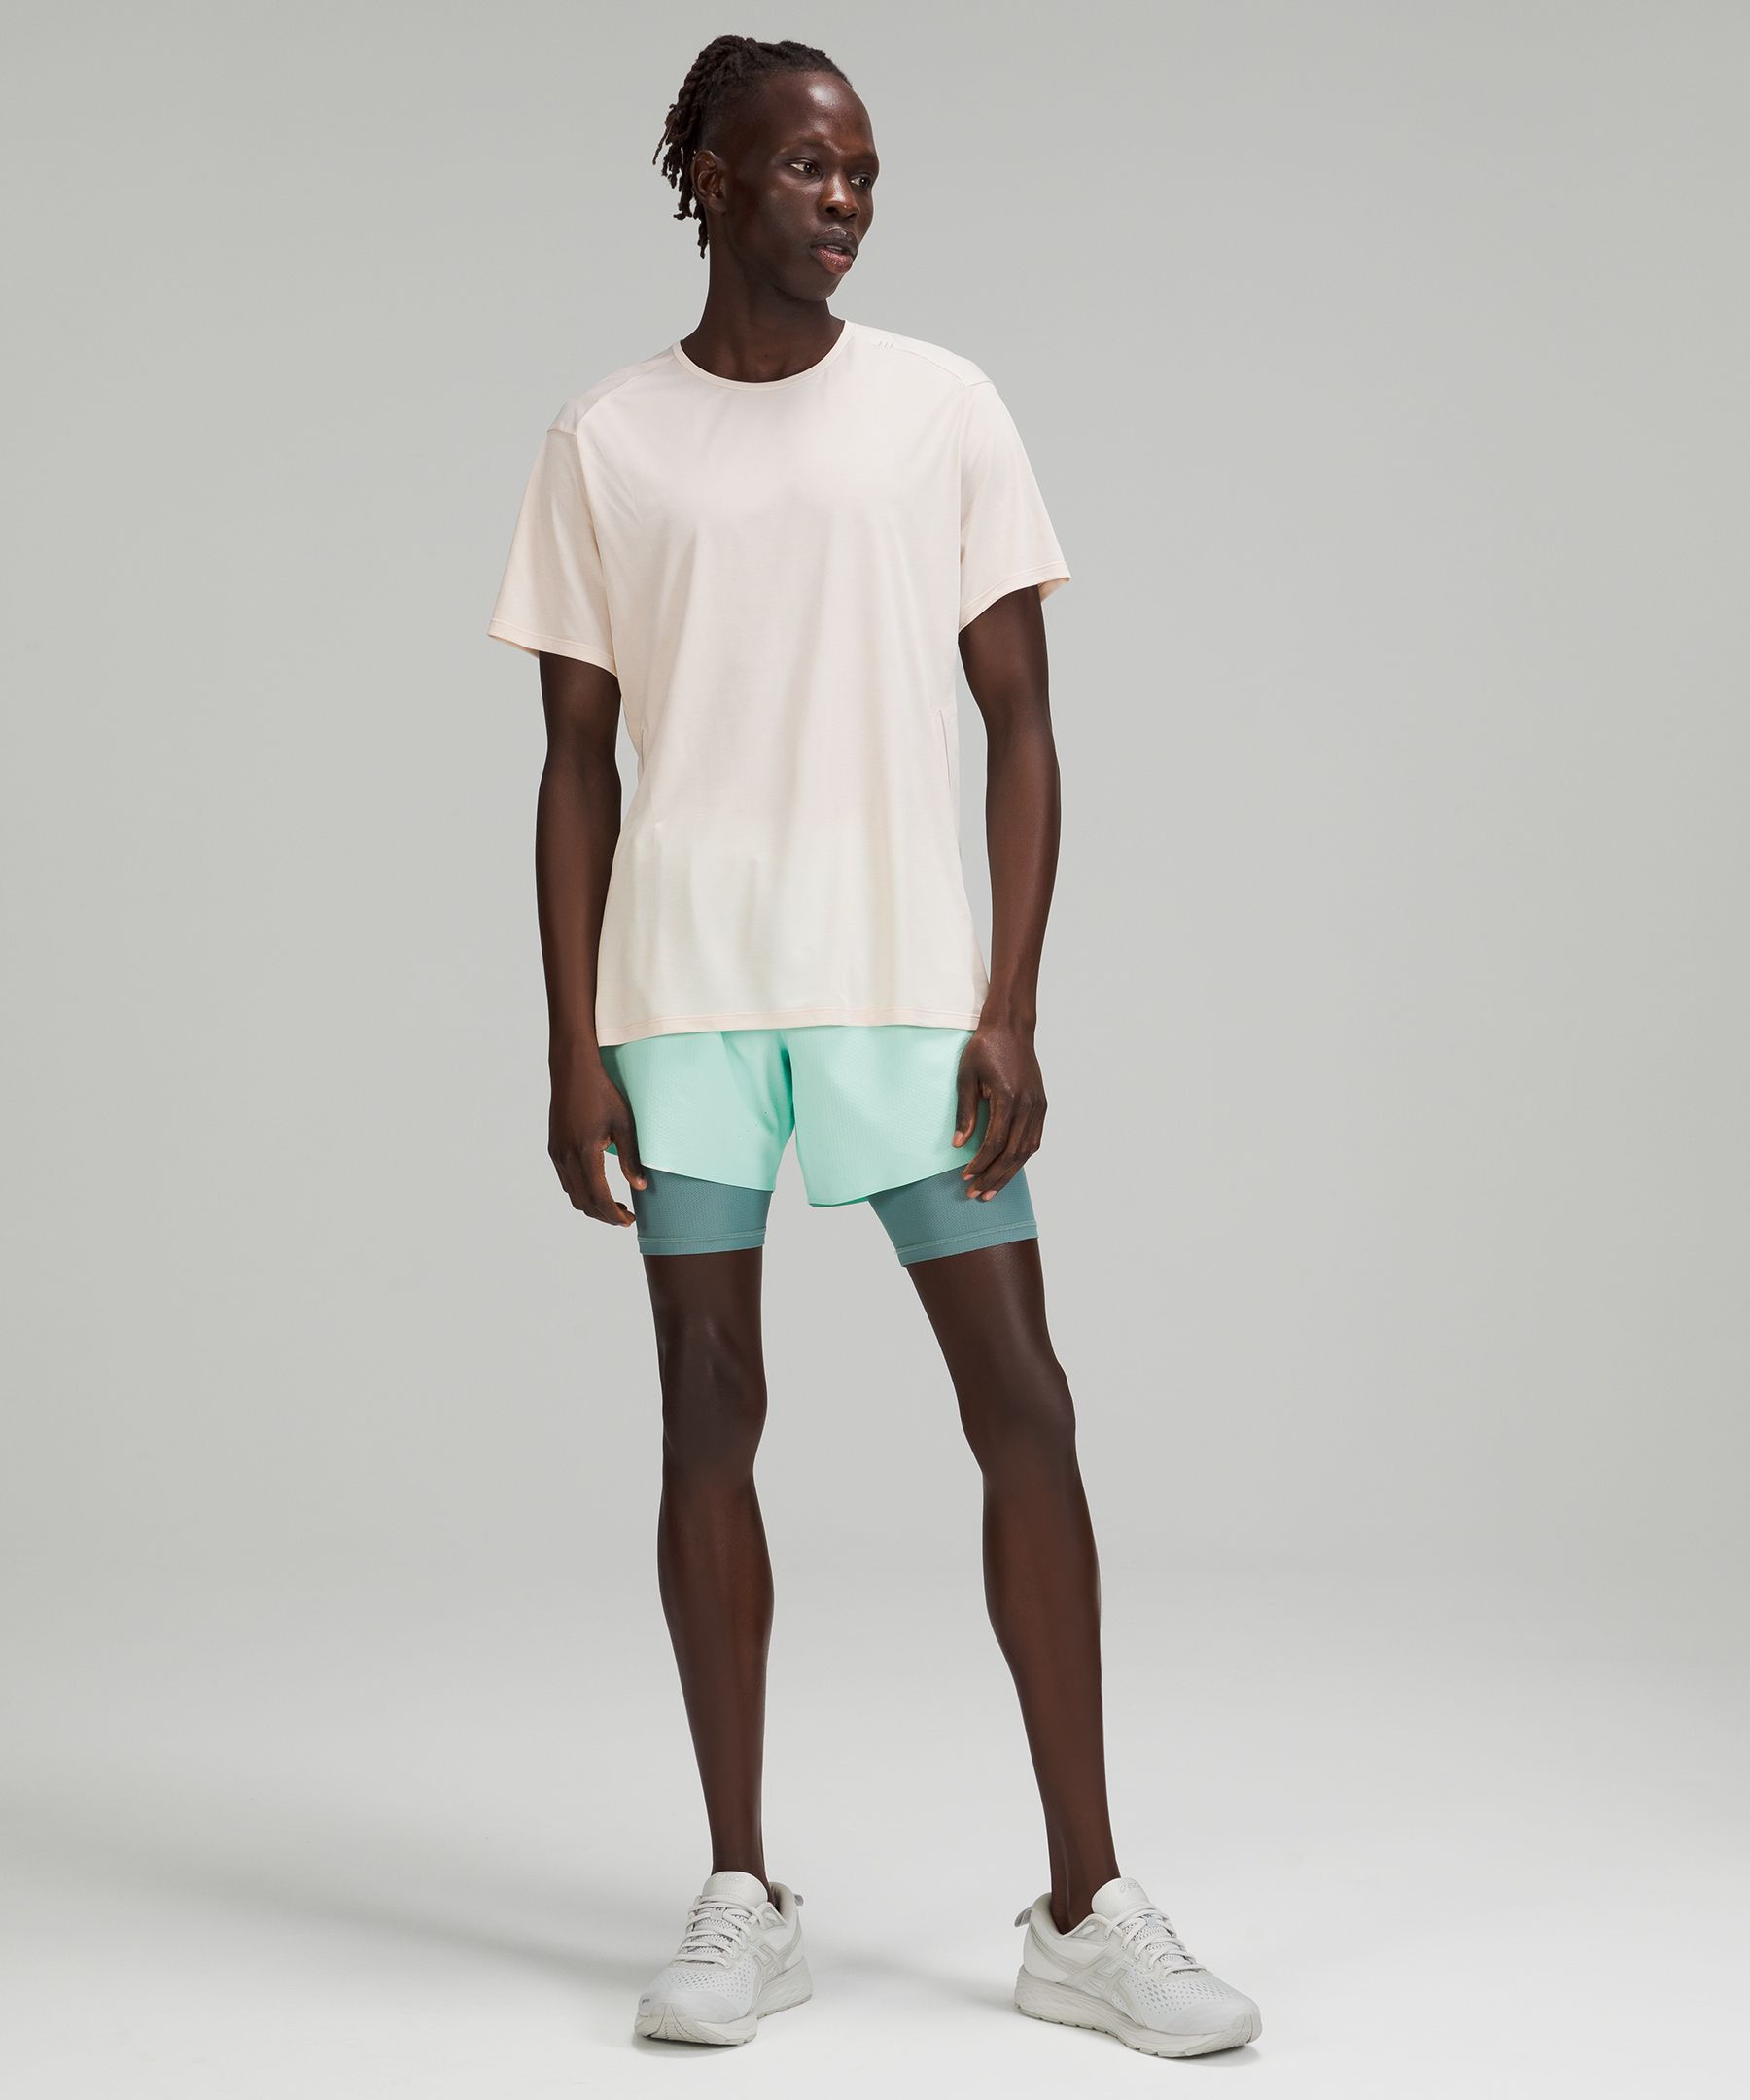 Men's Short Sleeve Shirts | lululemon